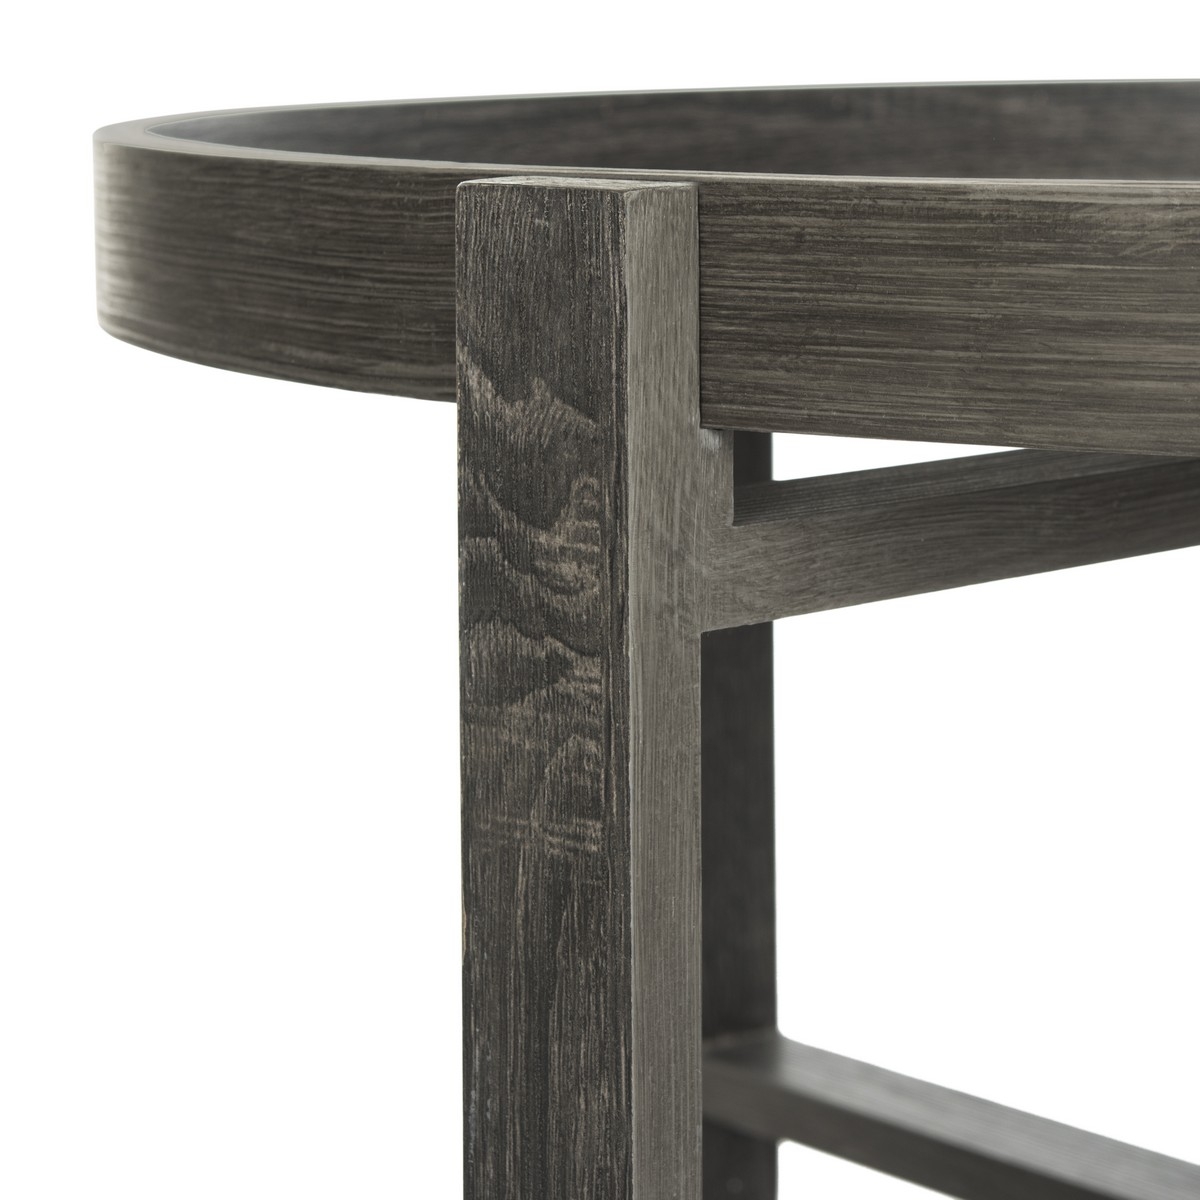 Cursten Retro Mid Century Wood Tray Top Coffee Table - Dark Grey - Arlo Home - Image 8